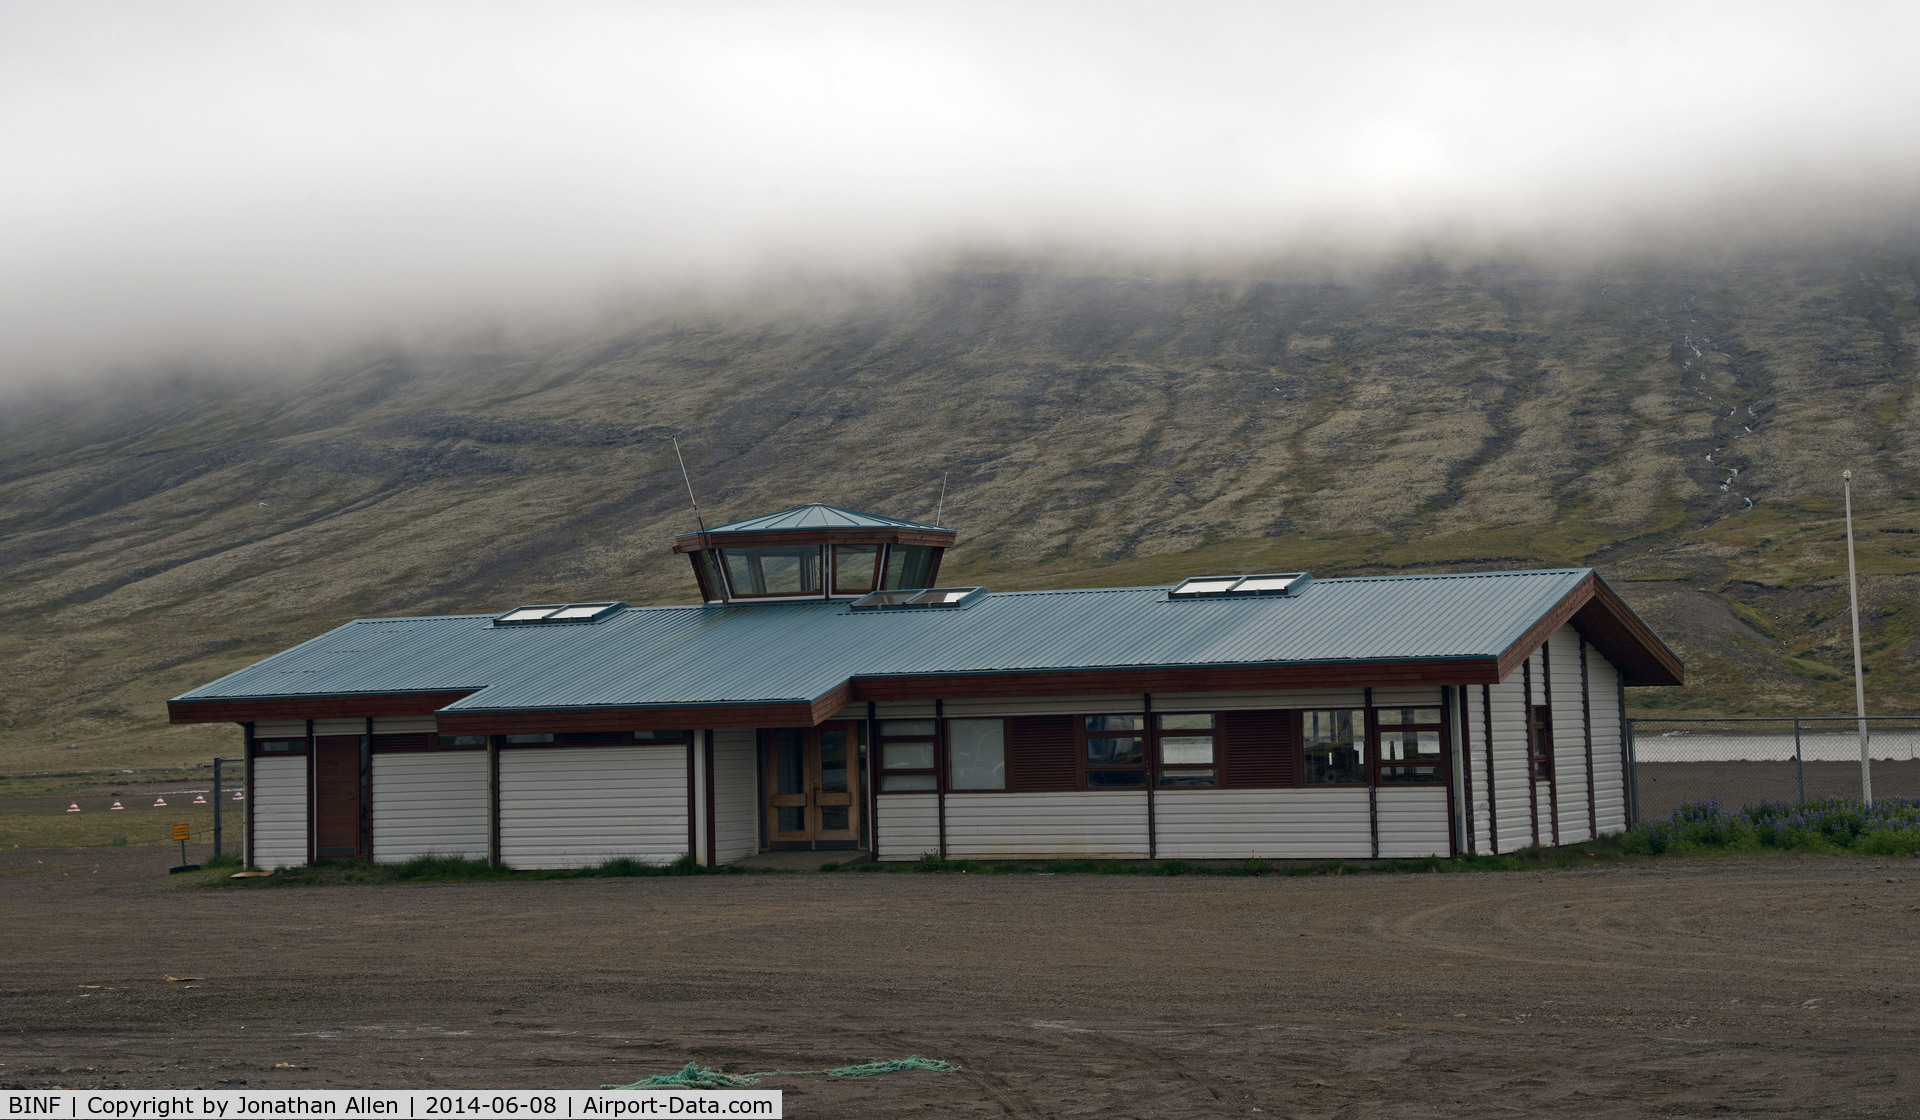 Nordfjordur Airport, Nordfjordur Iceland (BINF) - Nordfjordur, also known as Neskaupstadur, looks to be very basic. 